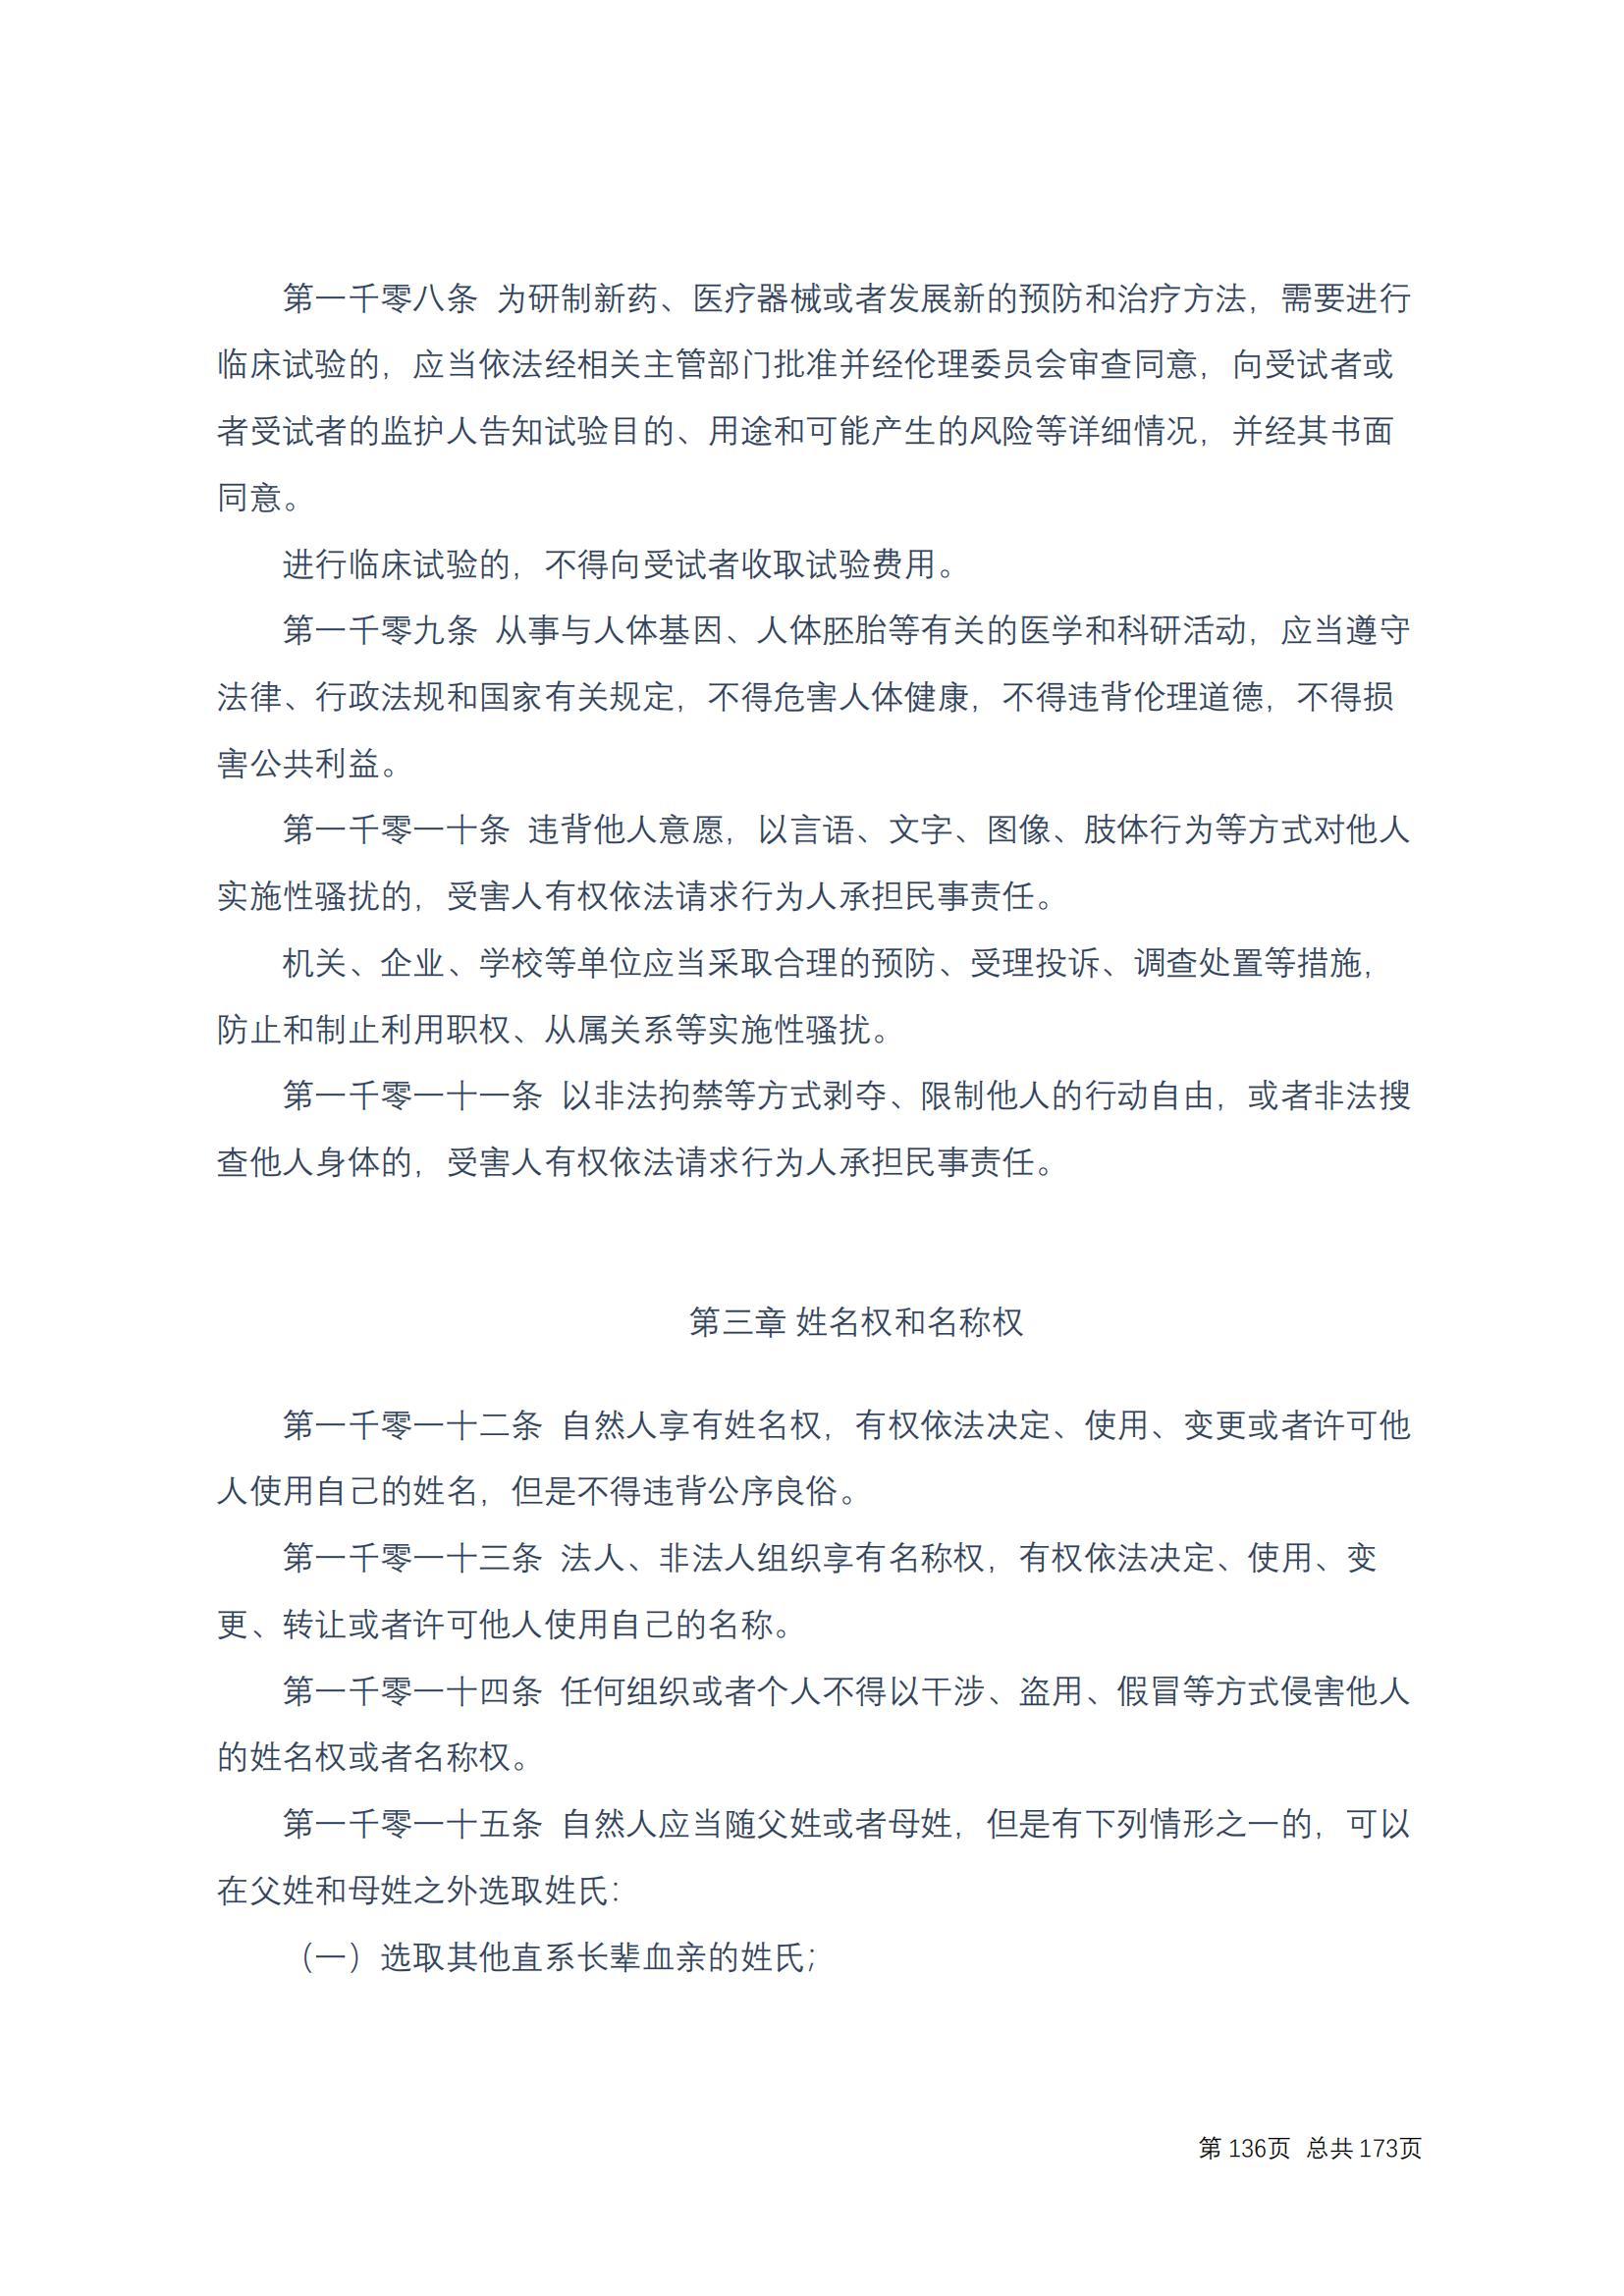 中华人民共和国民法典 修改过_135